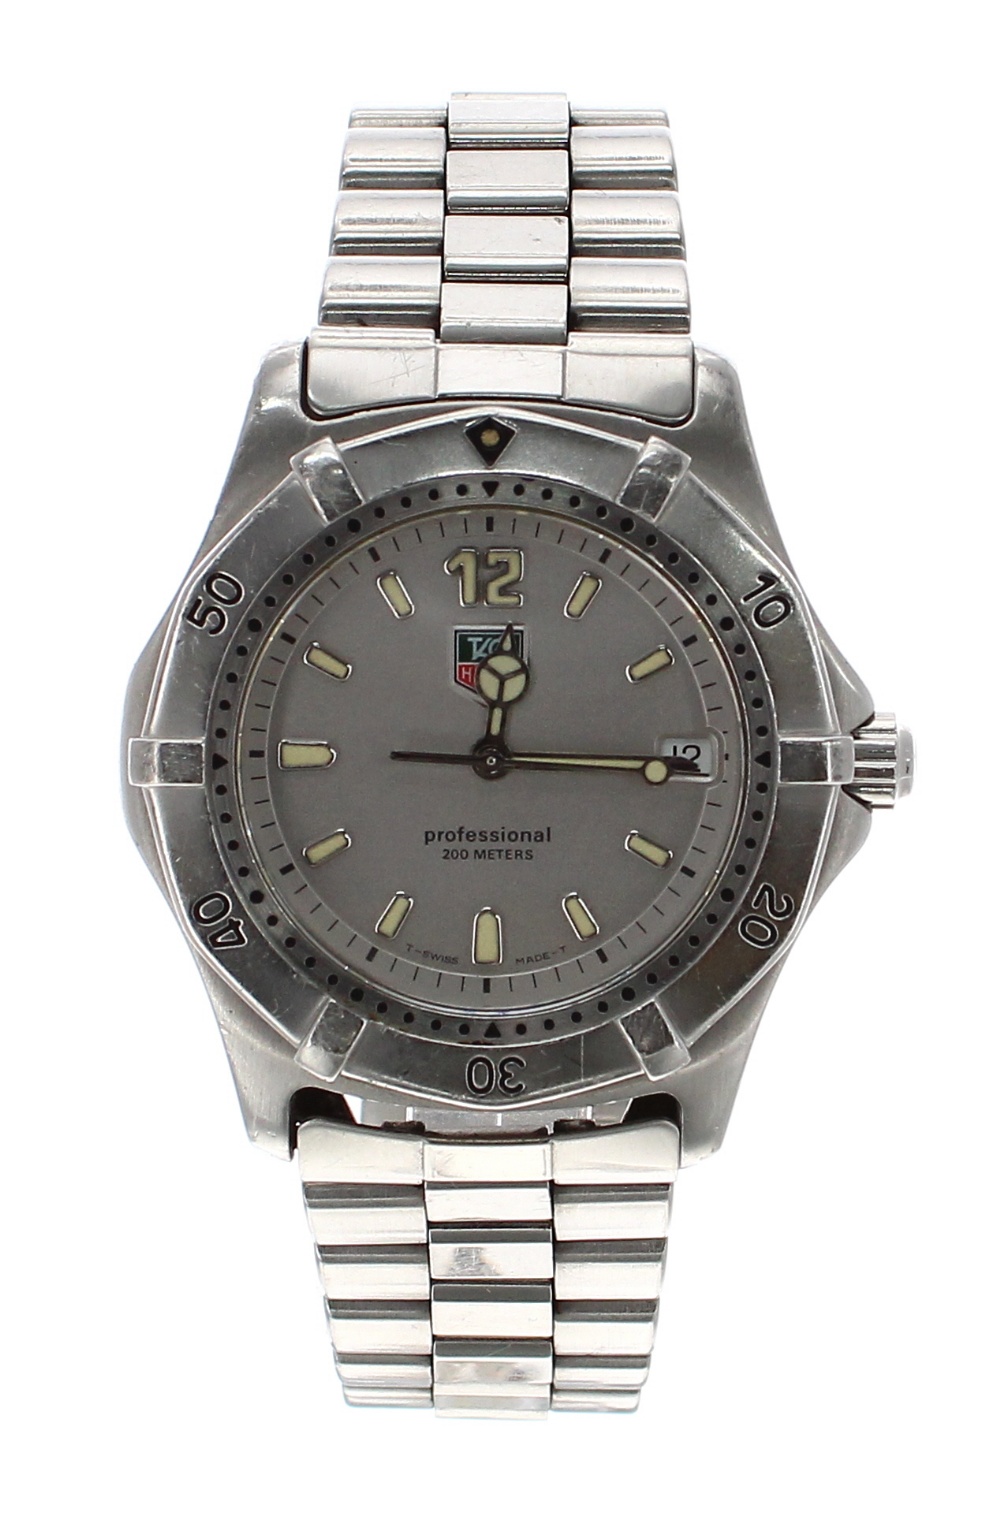 Tag Heuer 2000 Series Professional 200m stainless steel gentleman's bracelet watch, ref. WK1112,